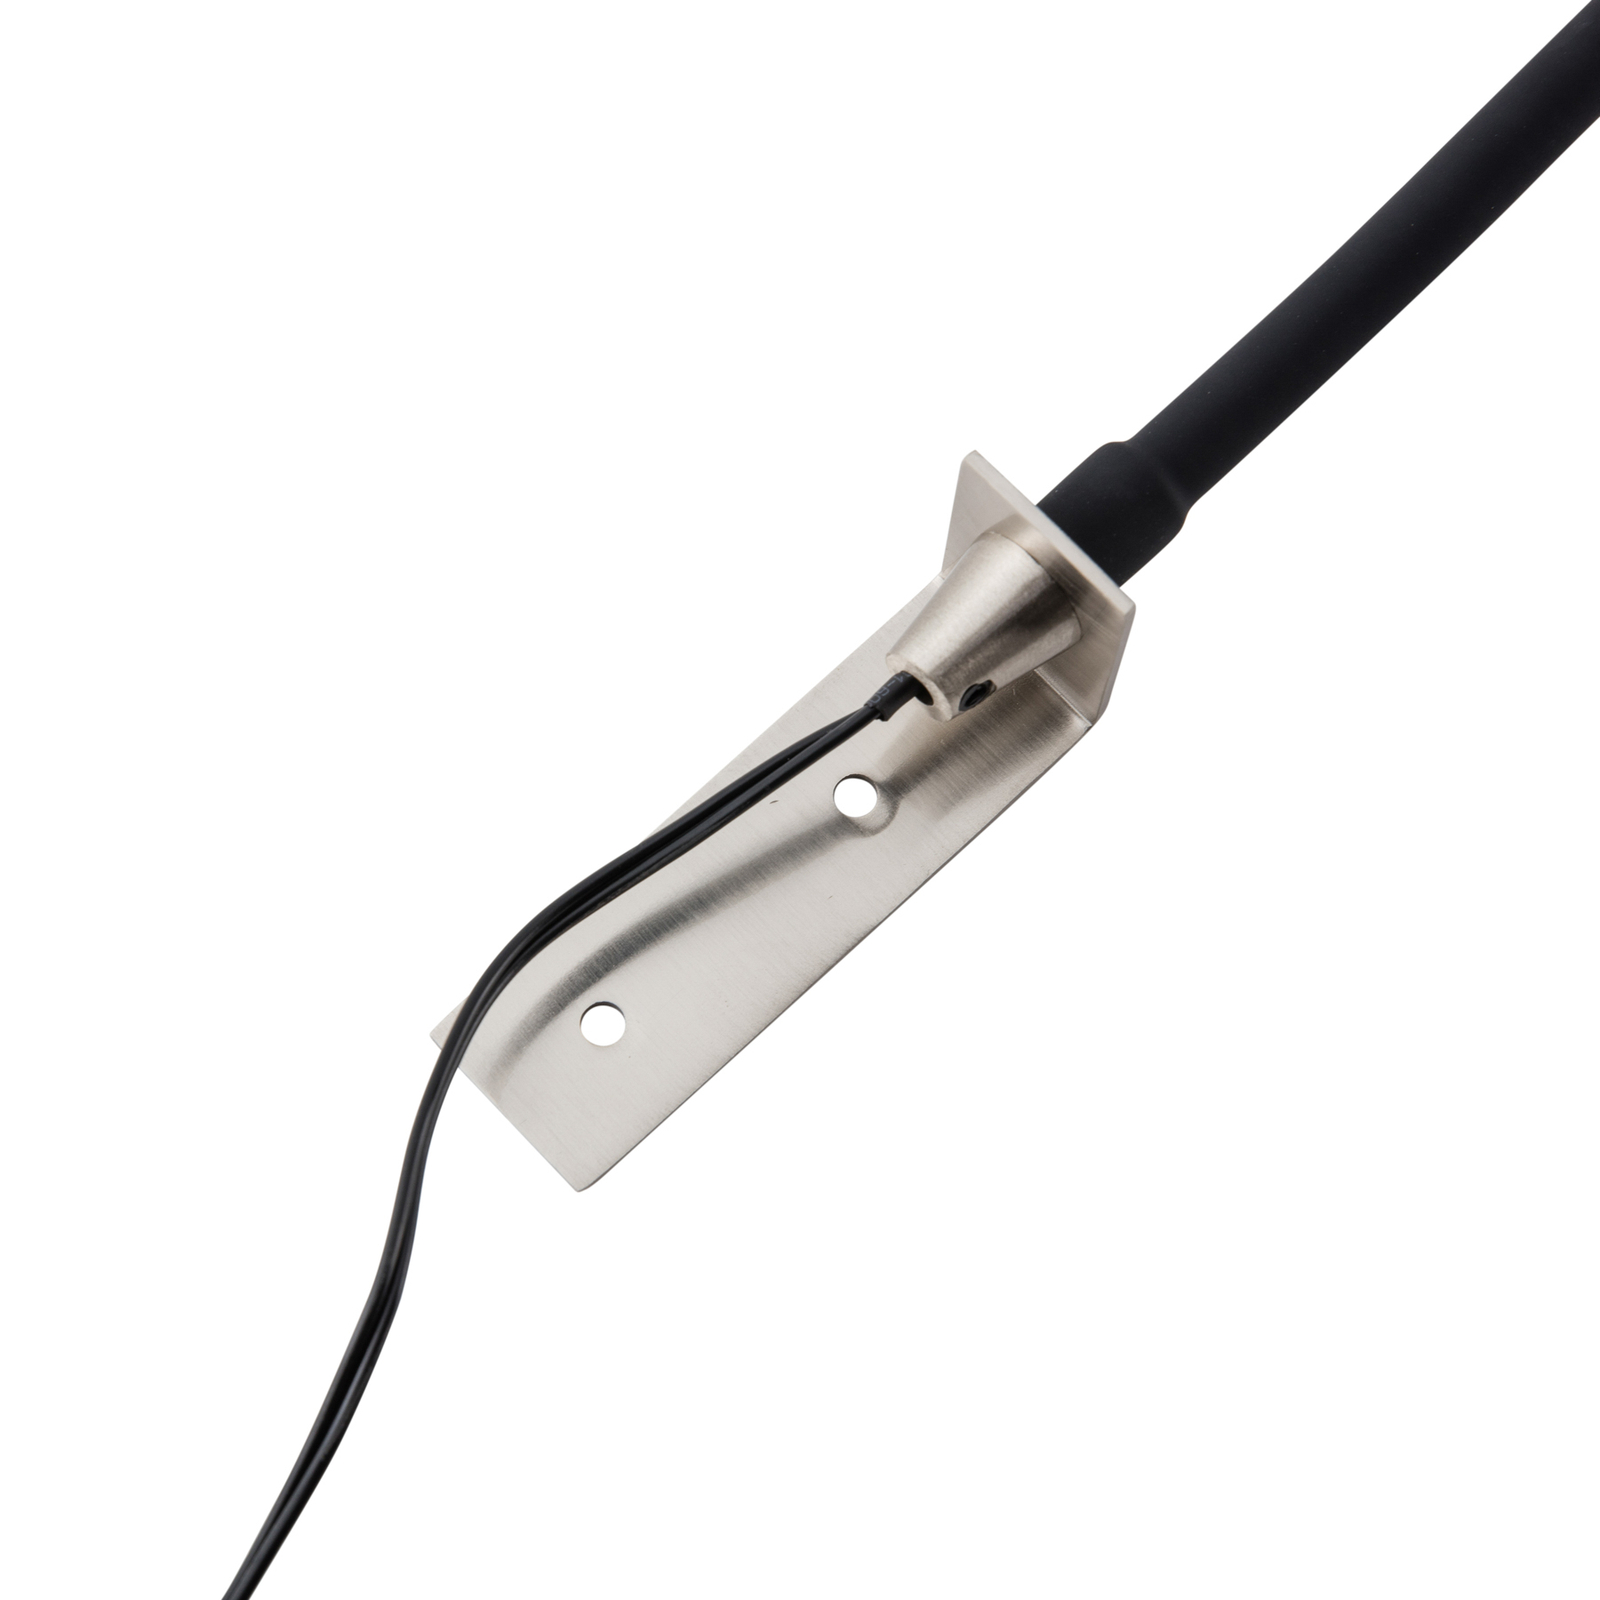 Lindby Flexola LED leeslamp, nikkel, rond, ijzer, stekker